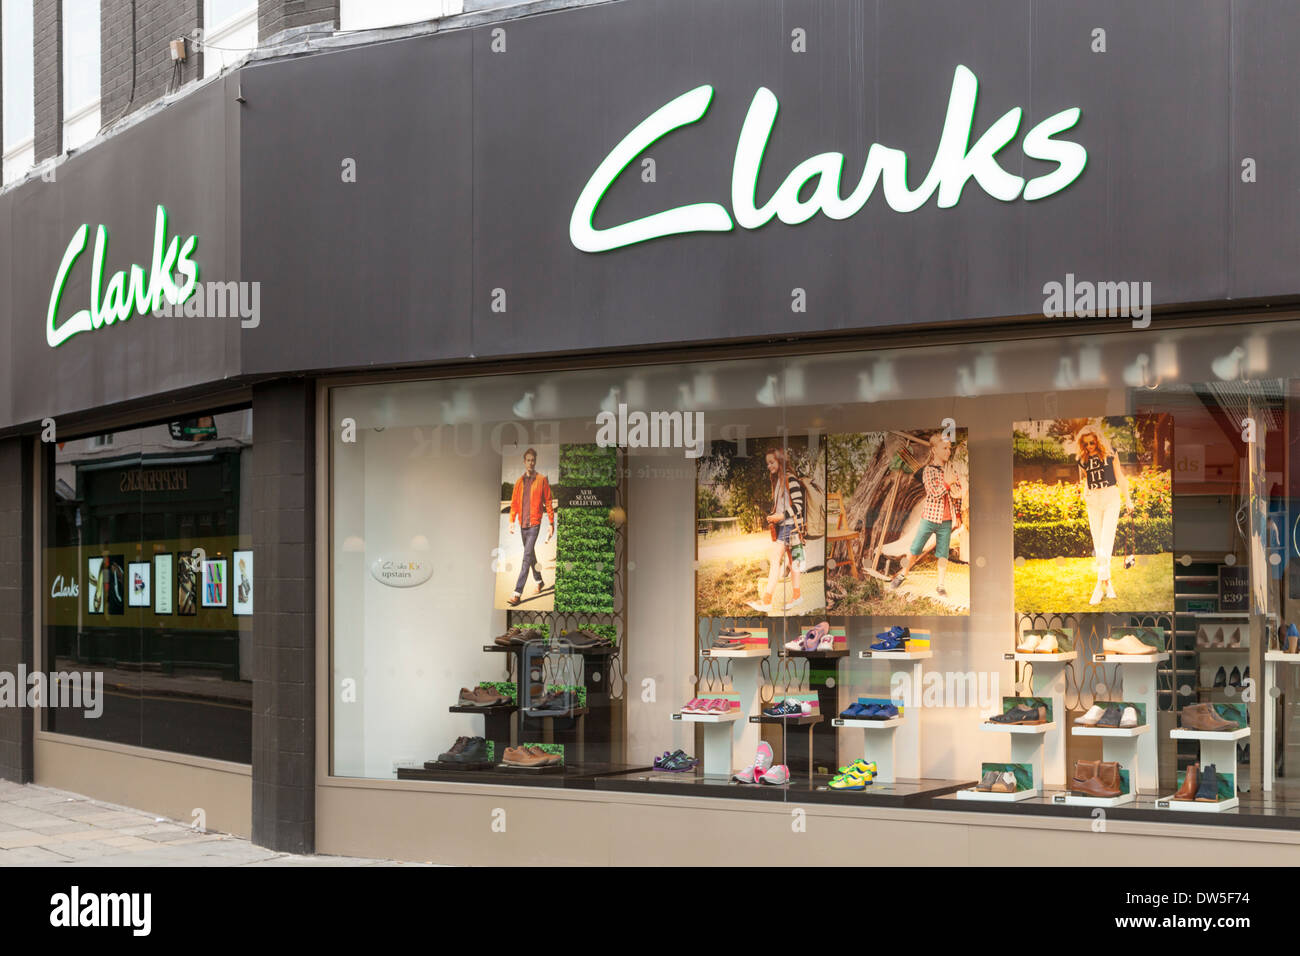 Clarks Schuhe. Ein Clarks Schuh shop in Nottingham, England, Großbritannien  Stockfotografie - Alamy